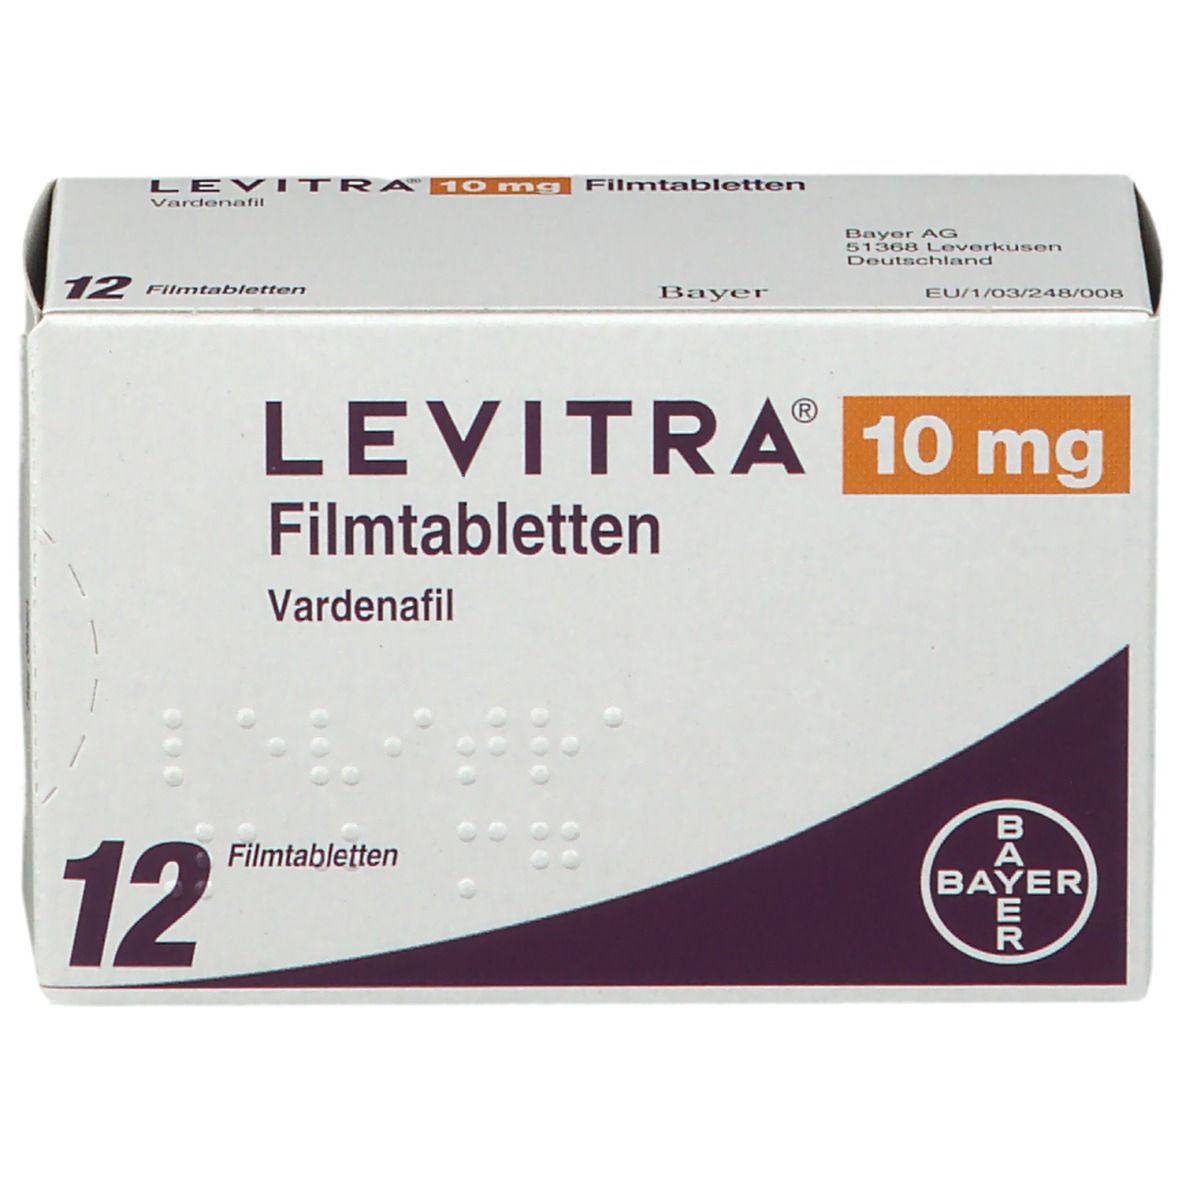 LEVITRA® 10 mg